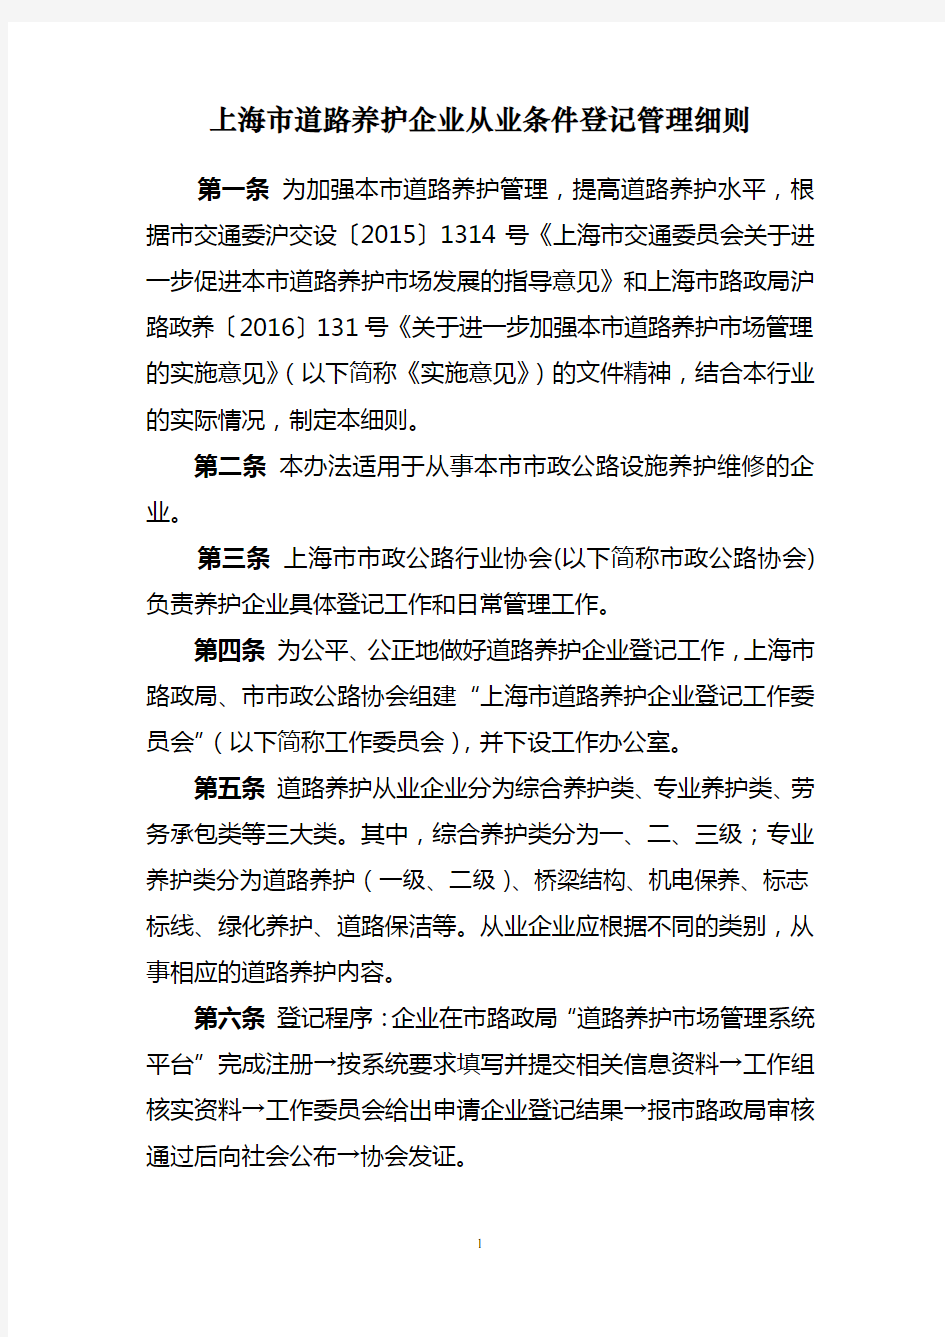 上海道路养护企业从业条件登记管理细则